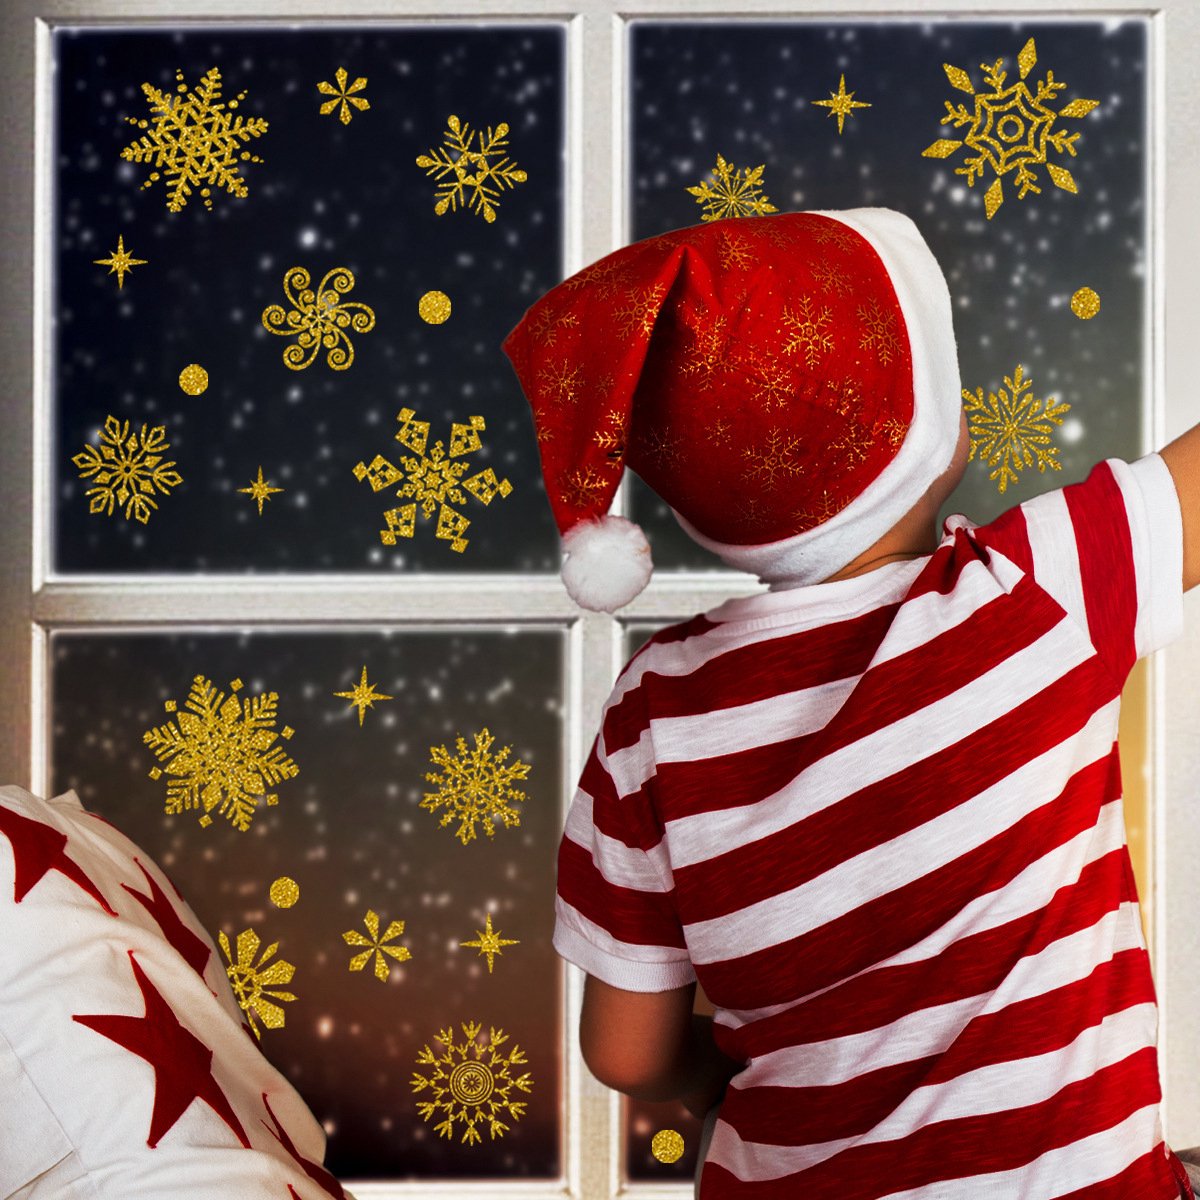 Kerst versiering | Statisch Raamsticker folie | Gouden glitter sneeuwvlokken | Kerst decoratie | Dubbelzijdig zichtbaar | Kerst | Sneeuwvlokken | Goud glitter | Raamdecoratie | Statische Raamdecoratie | Woonkamer | Huis inrichting |